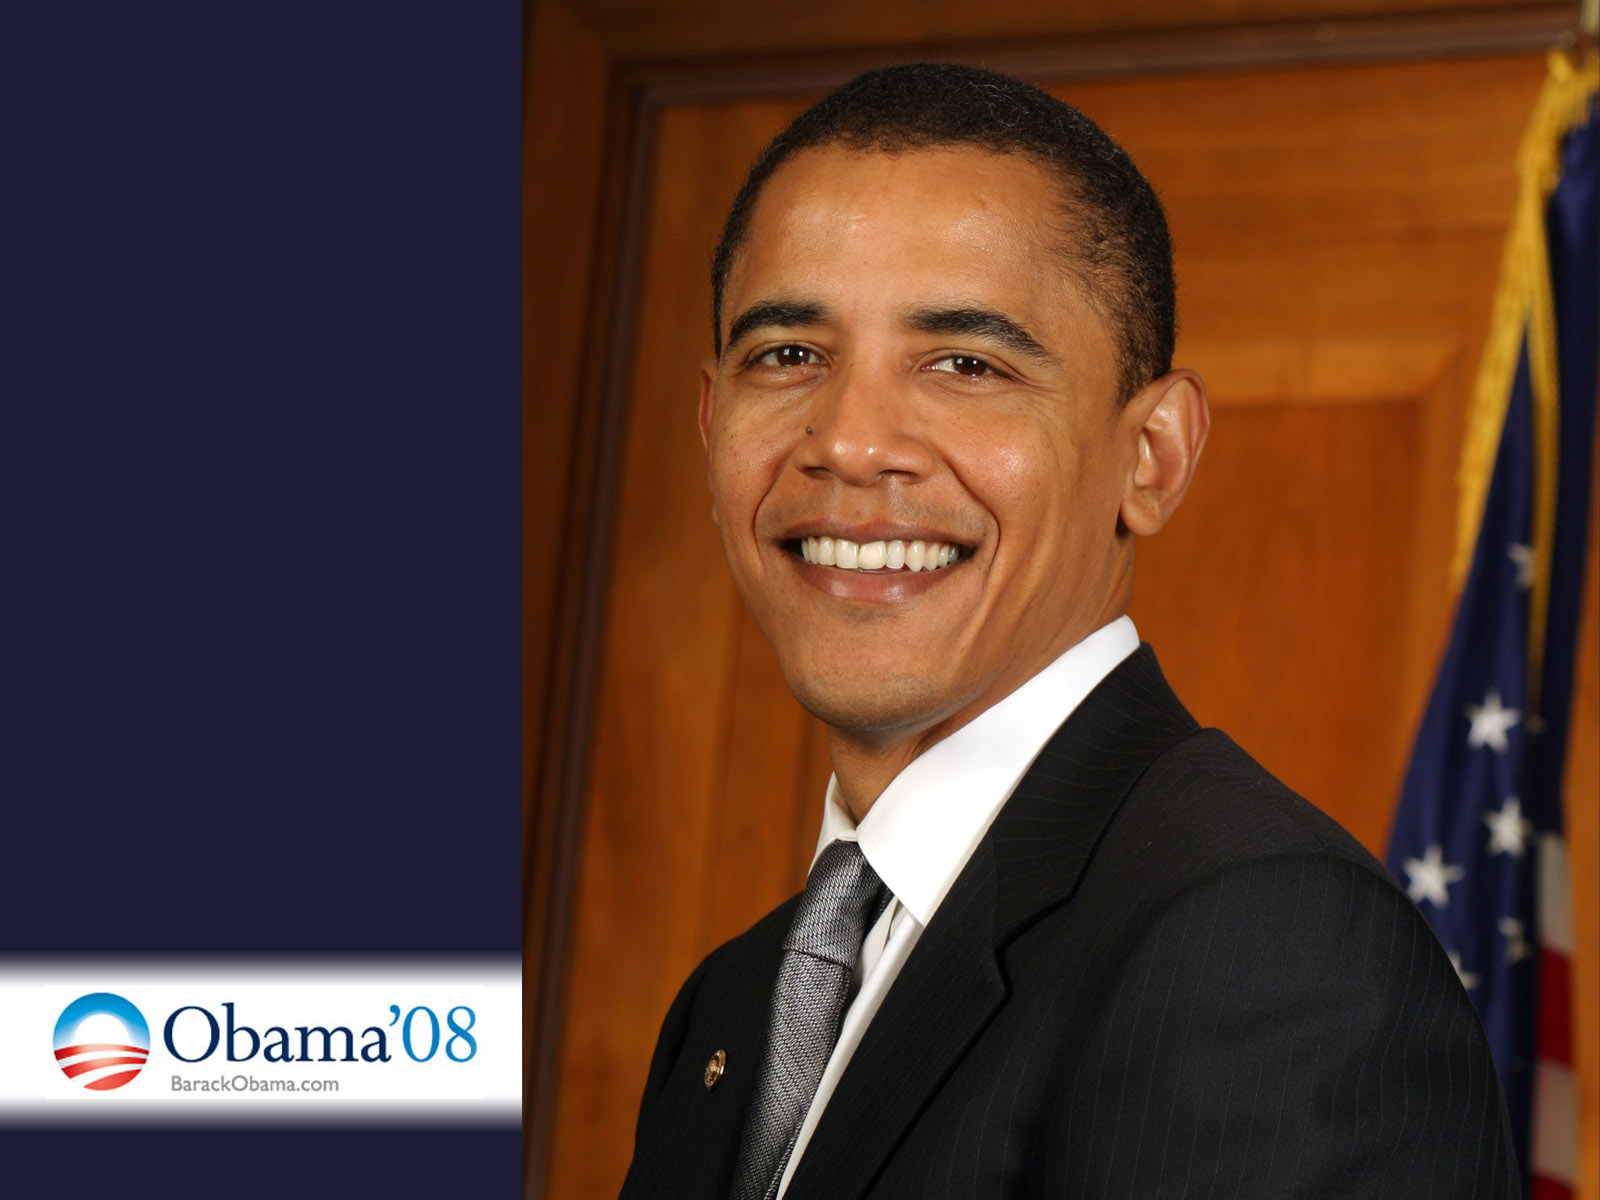 Celebrity Barack Obama HD Wallpaper | Background Image